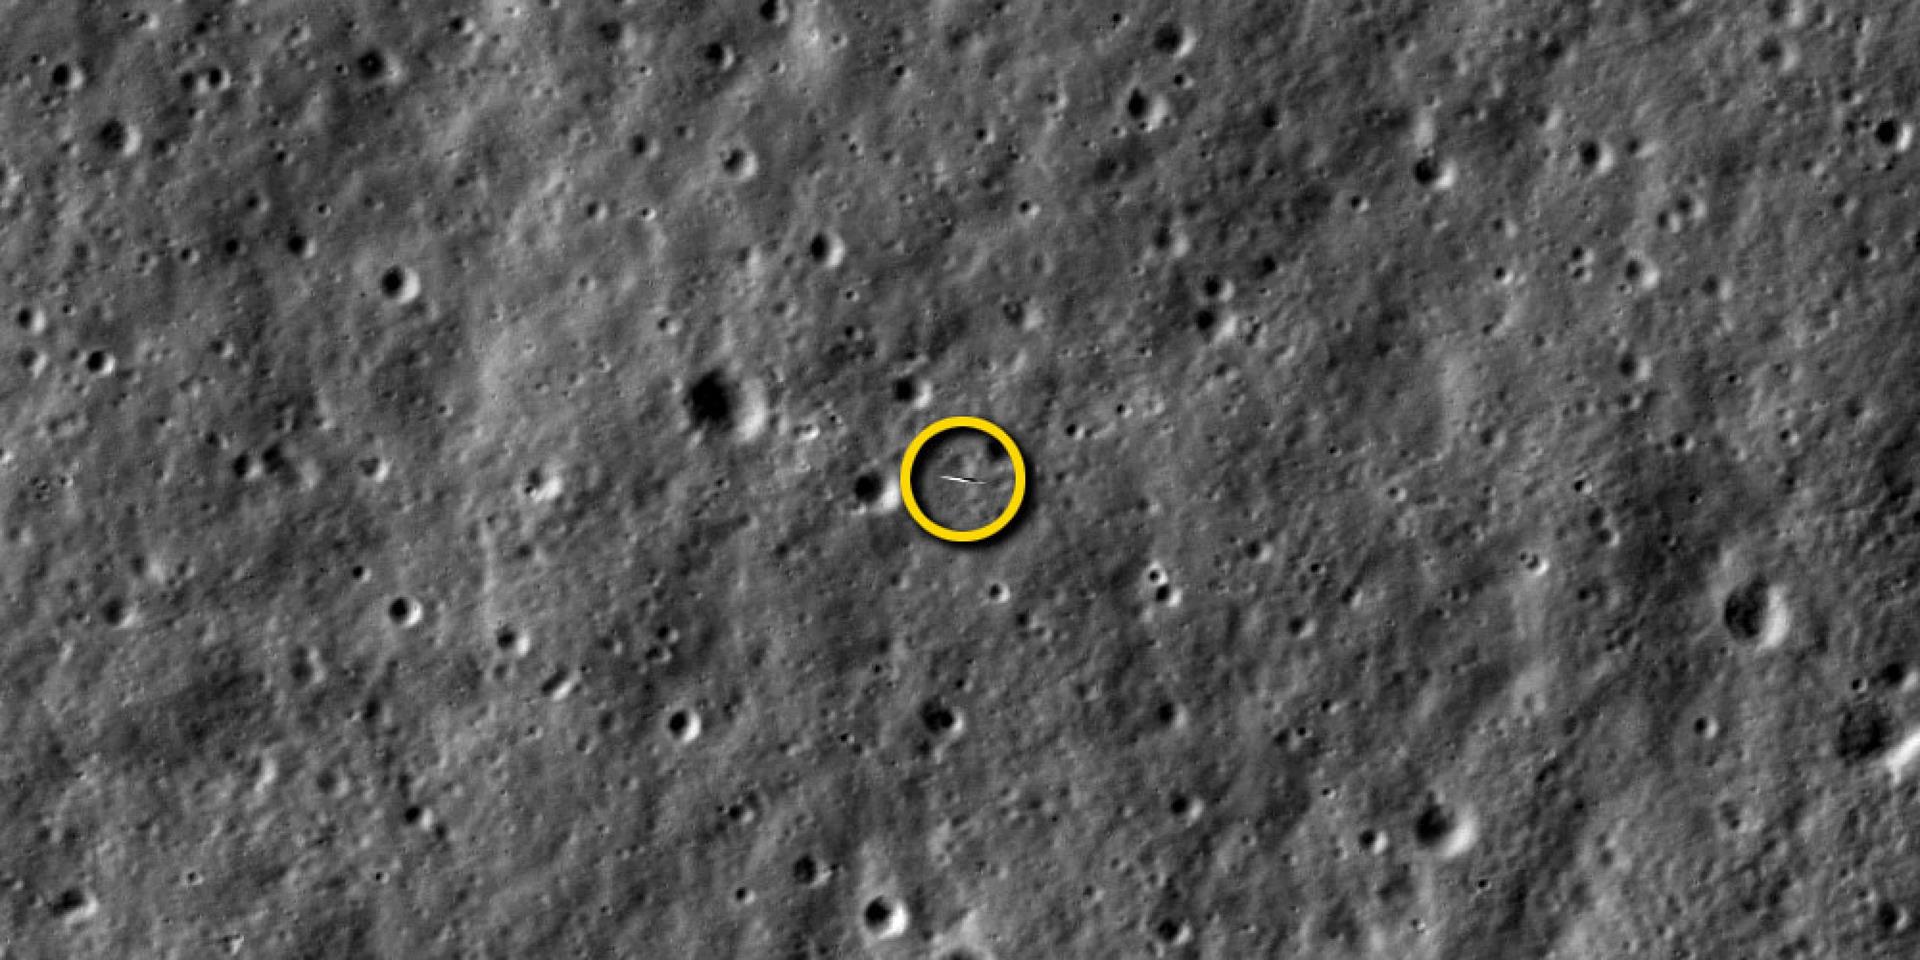 Снимки НАСА обратной стороны Луны